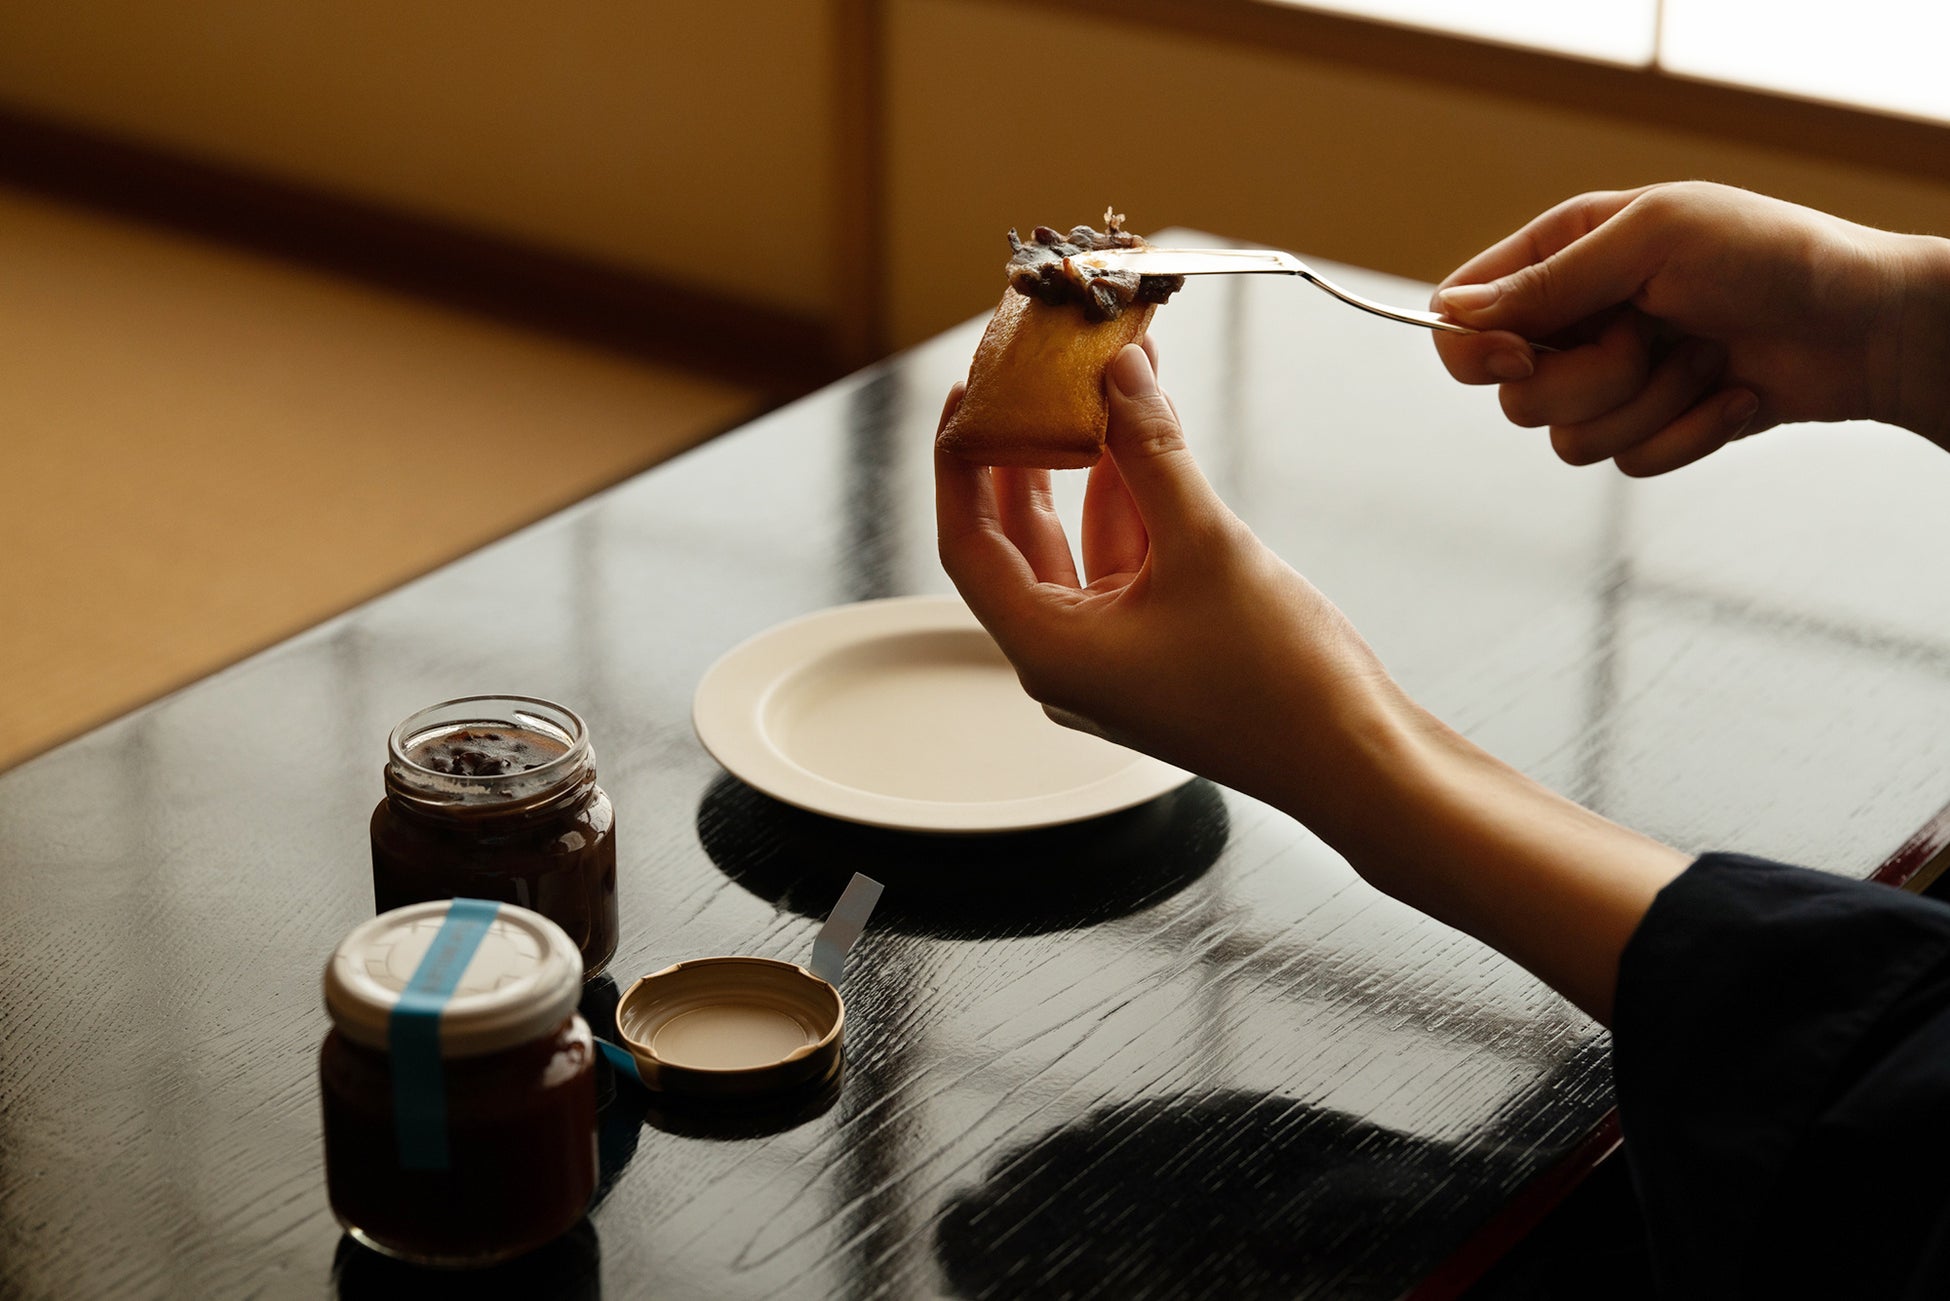 日本一の クレープ専門店 『ディッパーダン』 生誕５０周年 企画クレープチェーン初の「飲むクレープ」 発売 について